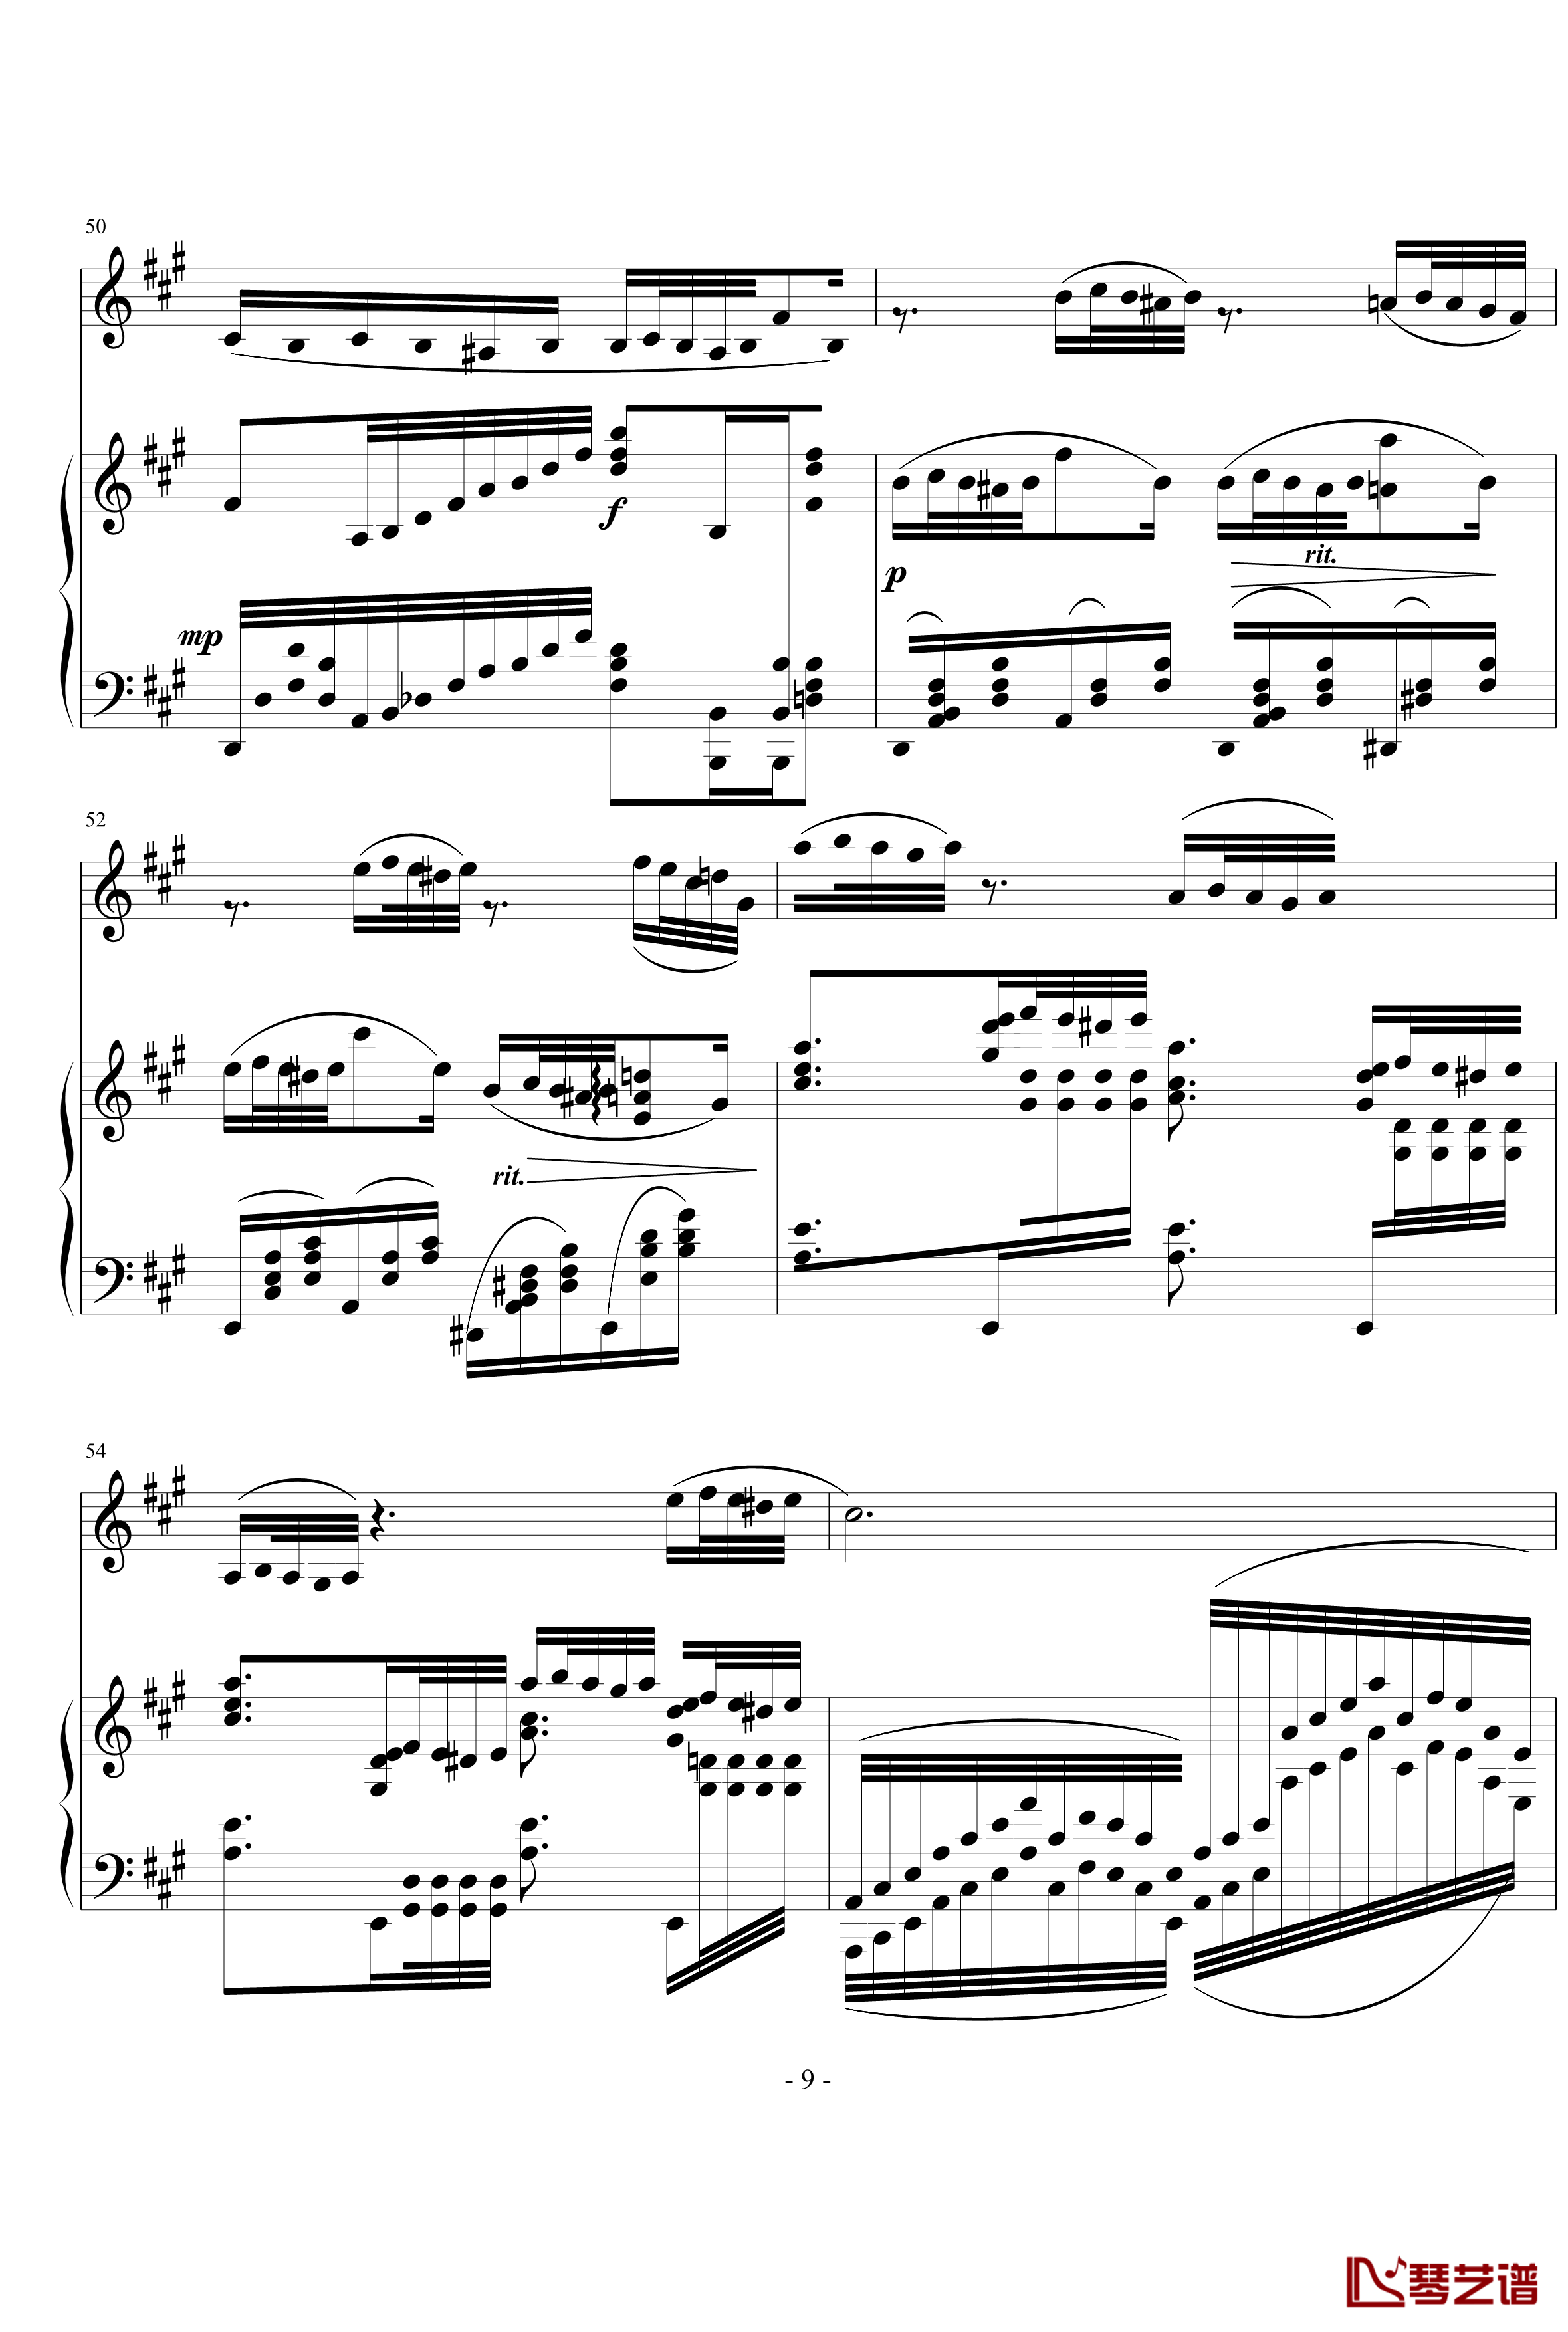 钢琴单簧管小奏鸣曲钢琴谱-nyride9